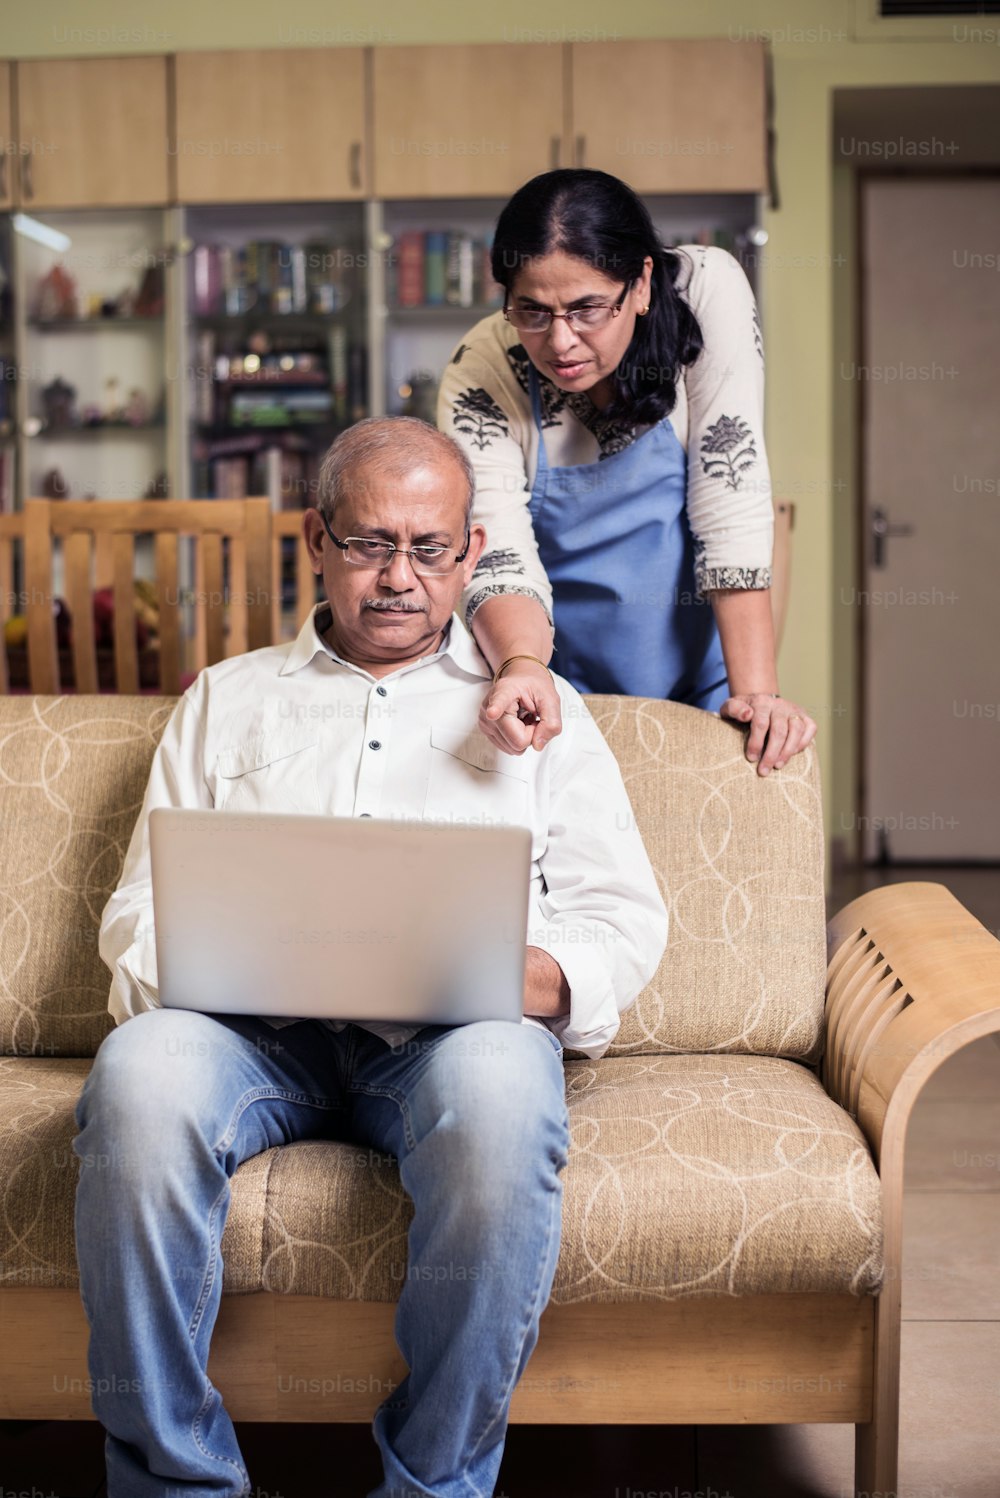 Contabilidad de parejas indias / asiáticas mayores, haciendo finanzas en el hogar y revisando facturas con computadora portátil, calculadora y dinero mientras está sentado en el jardín de su casa